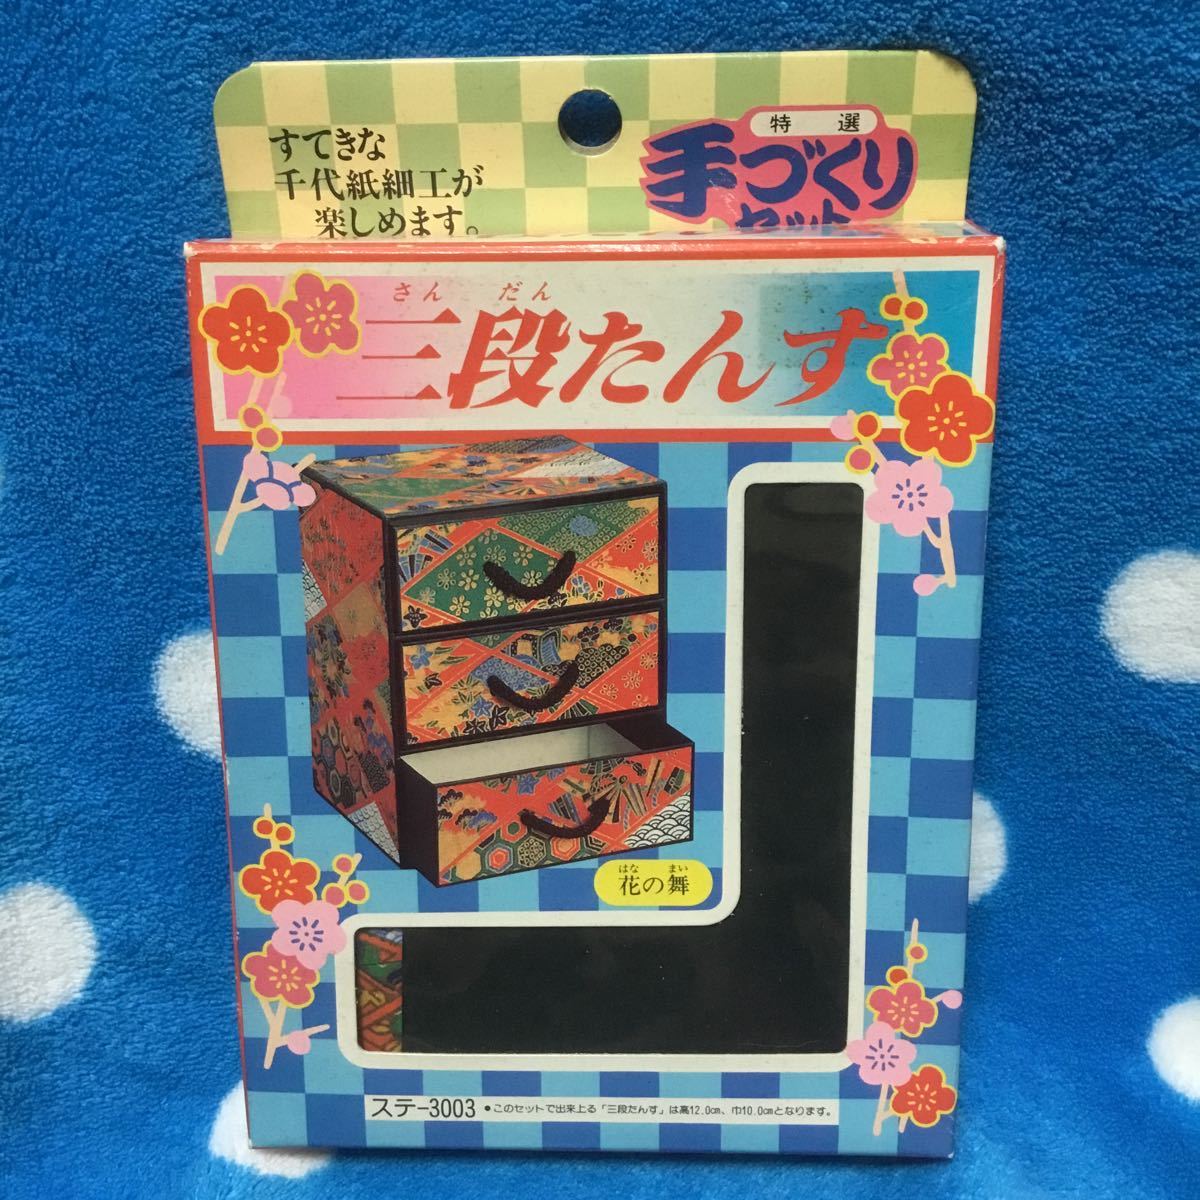 Набор ручной работы Chiyogami для рукоделия Цветочный танец с узором трехъярусный комод, ручное ремесло, ремесло, поделка из бумаги, оригами, Чиогами